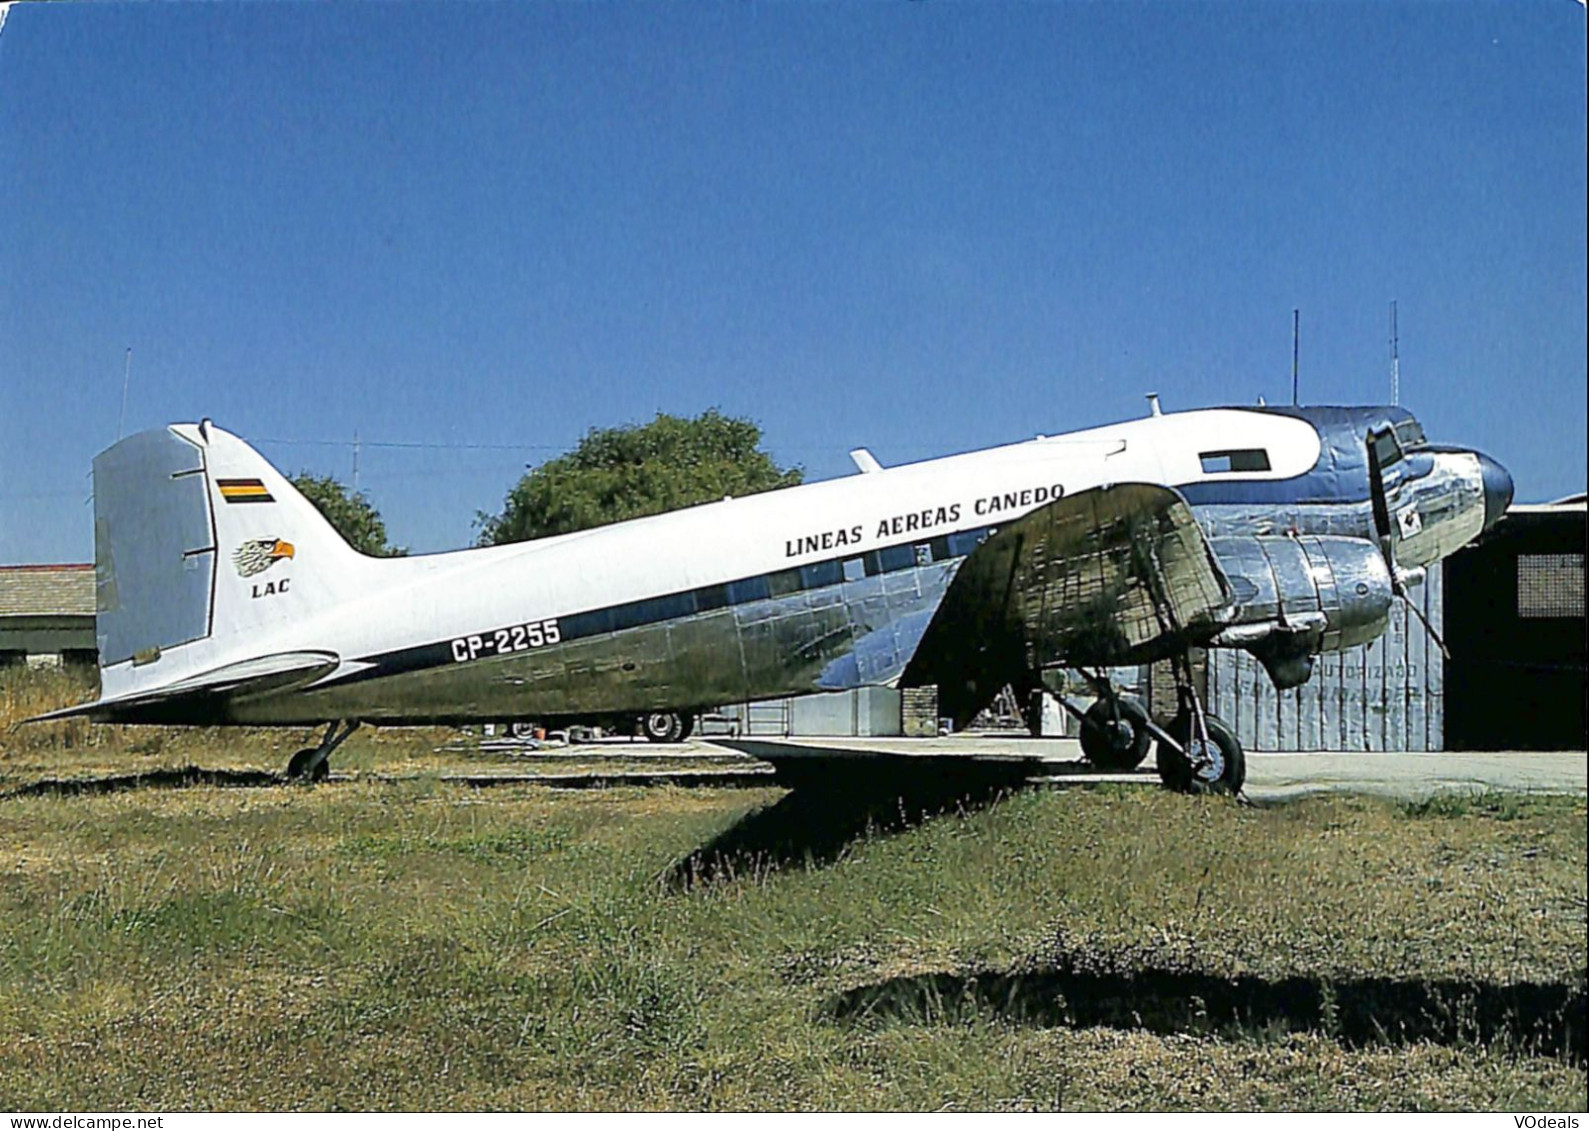 Belgique - Transports - Aviation - Avions - Lineas Aereas Canedo - DC-3C - CP-2255 - 1946-....: Era Moderna